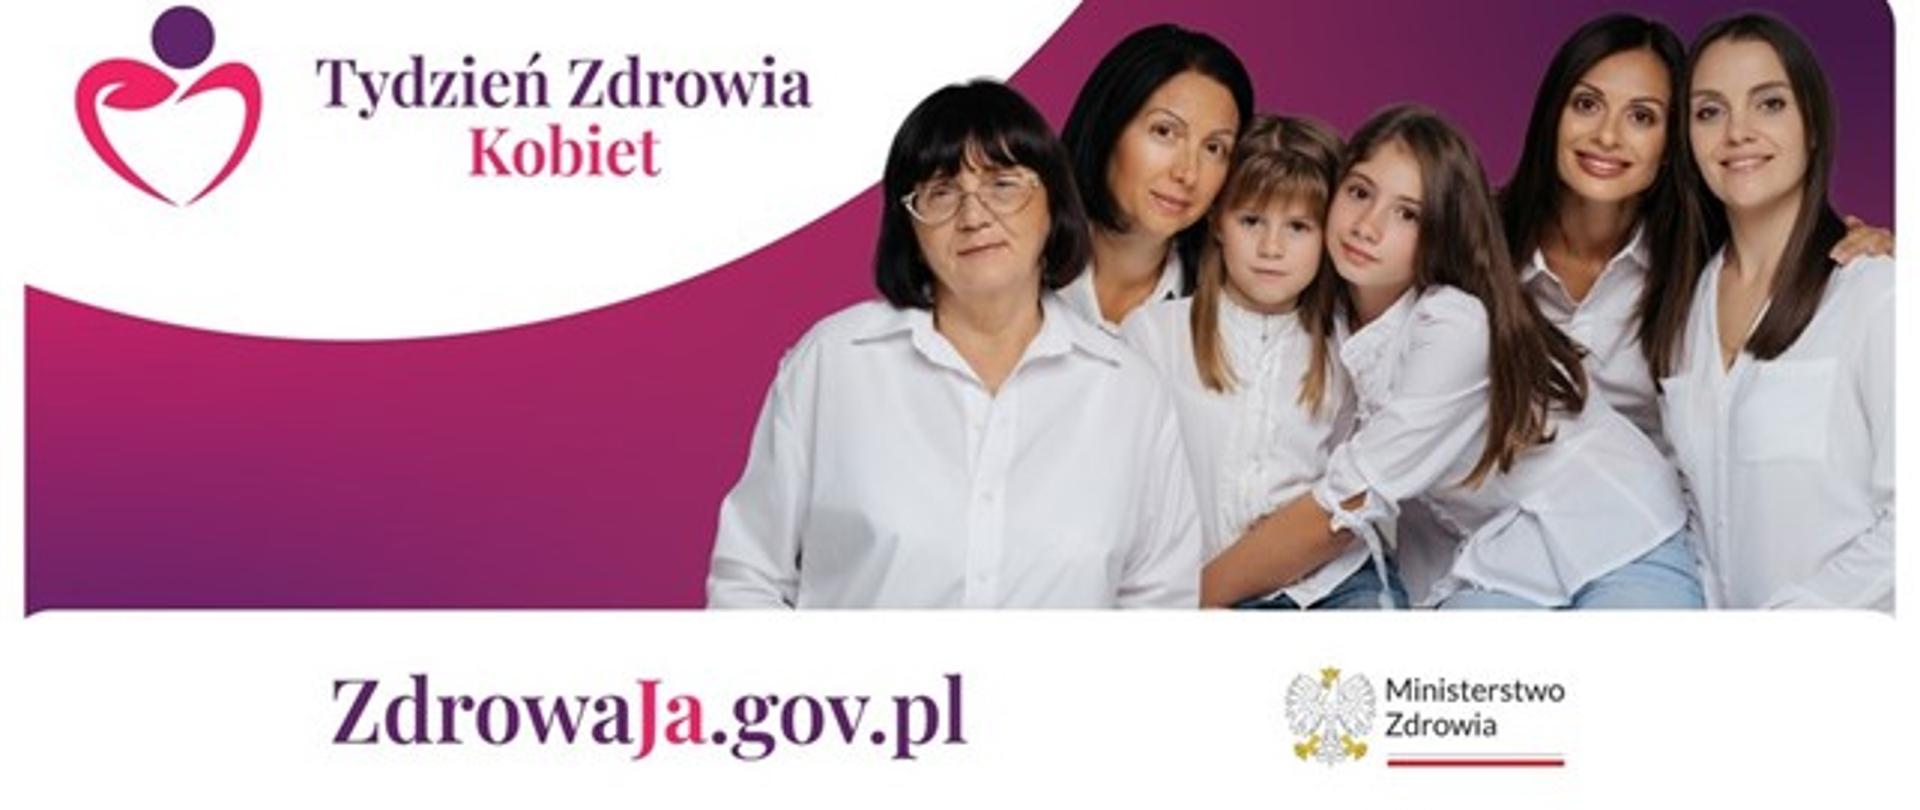 Na różowo – fioletowym tle zdjęcie kobiet w różnym wieku oraz dziewczynek w białych koszulach, a po lewej stronie napis Tydzień Zdrowia Kobiet. Pod zdjęciem adres strony internetowej: ZdrowaJa.gov.pl oraz logo Ministerstwa Zdrowia